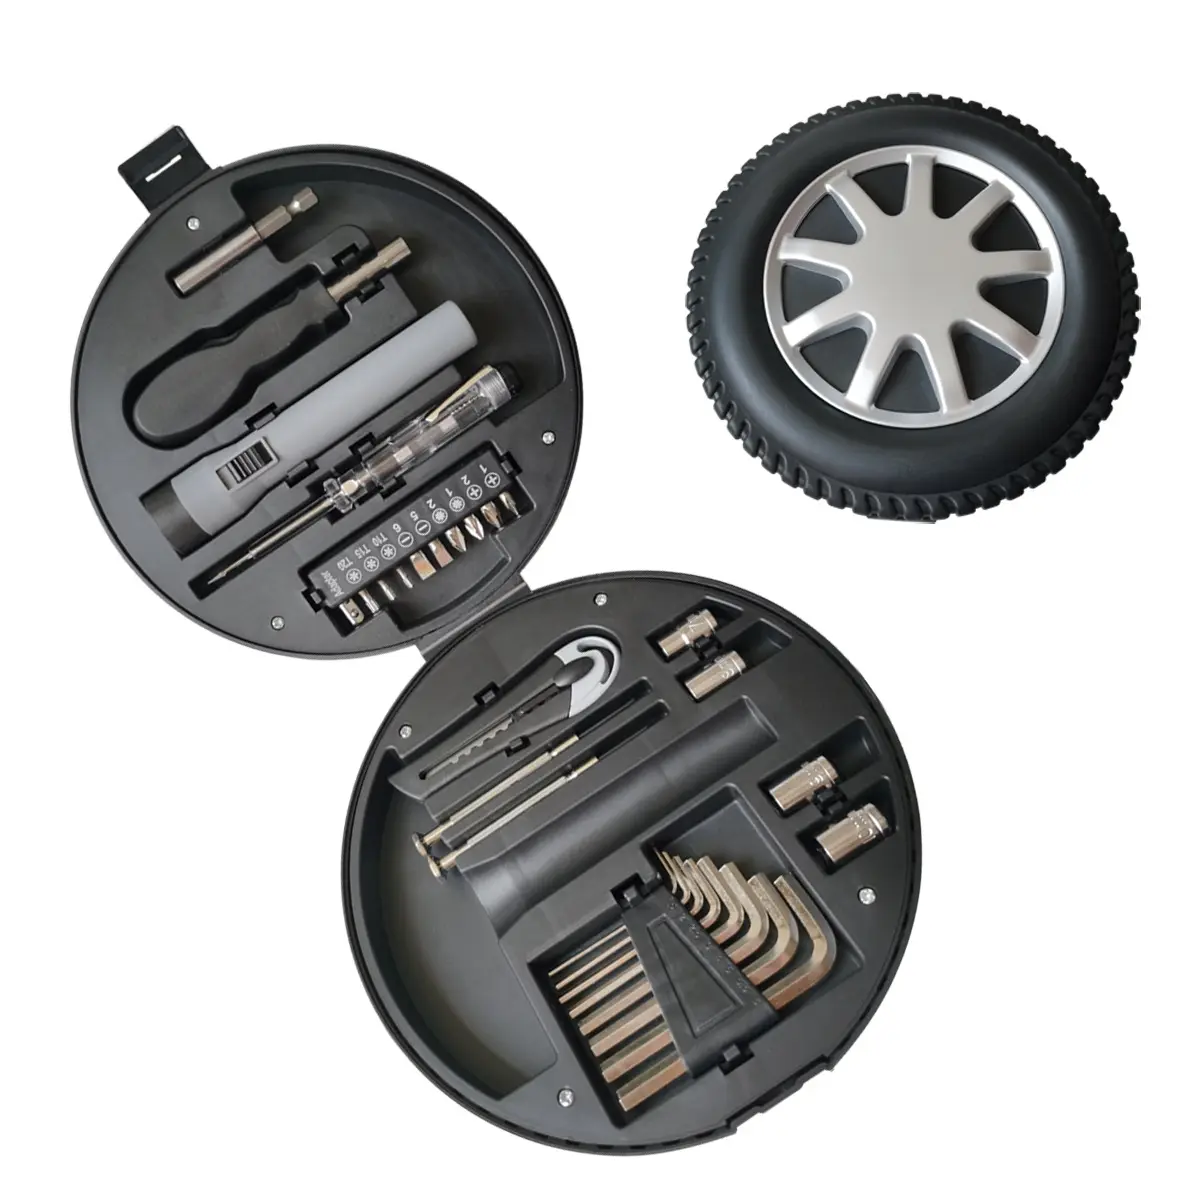 프로모션 공짜 29pcs 타이어 모양의 도구 키트, 자동차 수리 도구 키트 세트